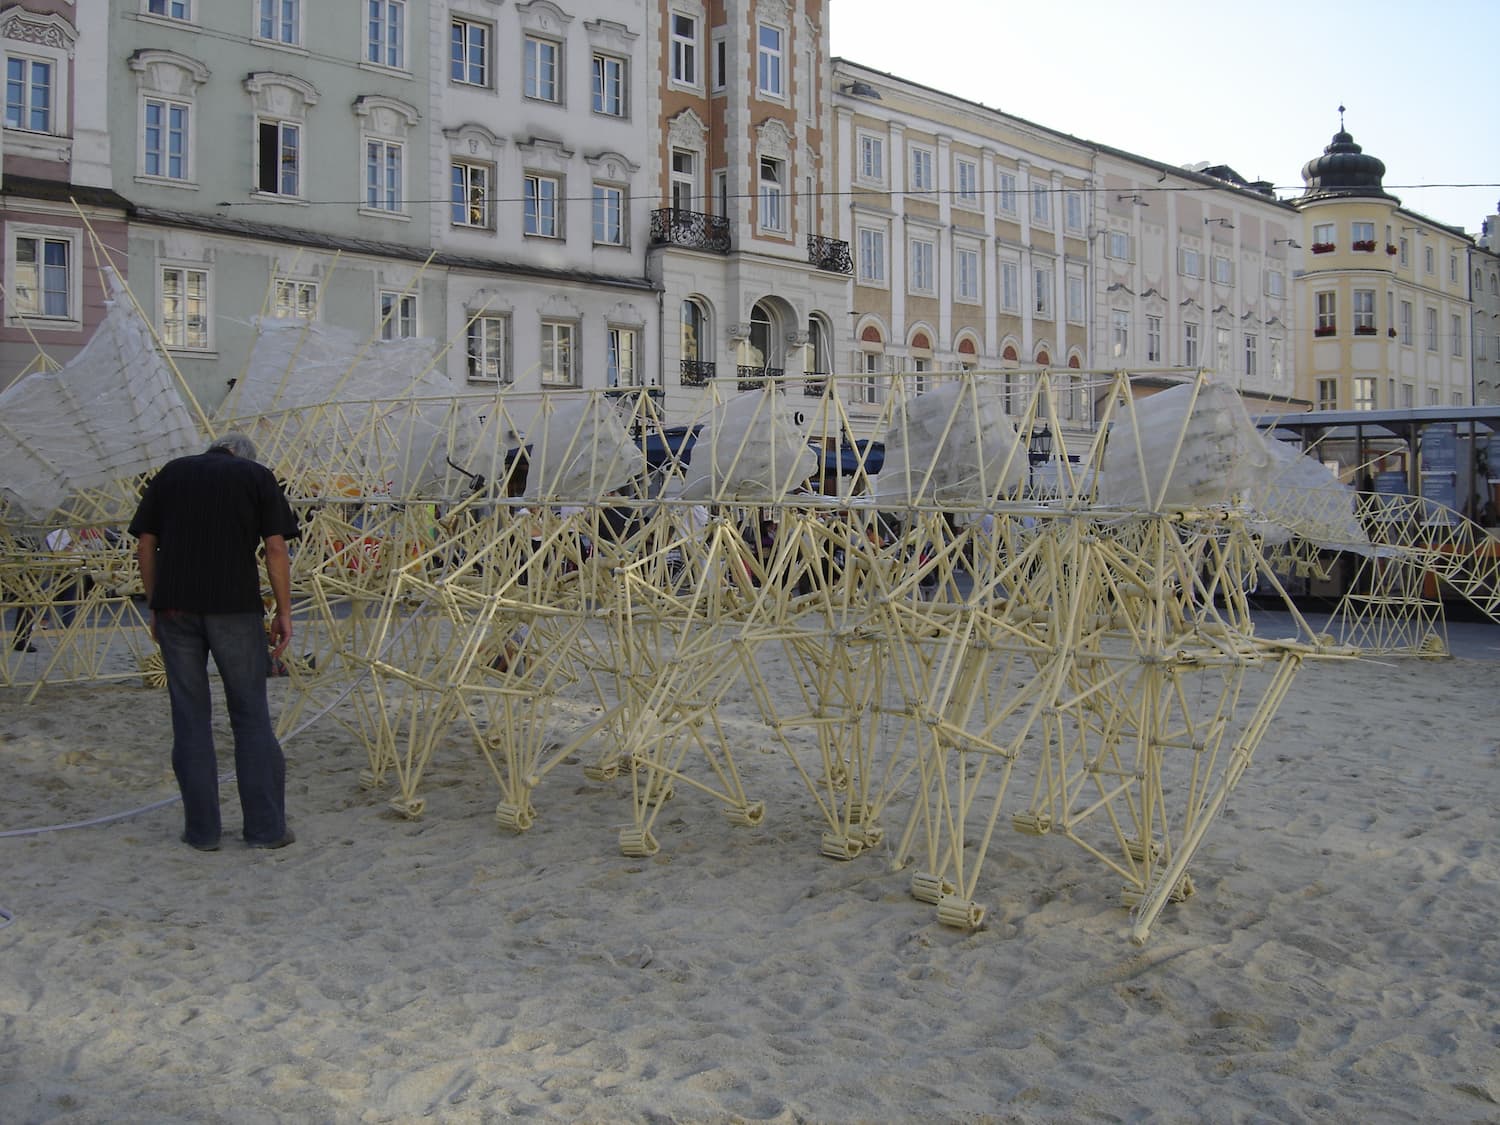 El trabajo de Jansen expuesto en Linz durante Ars Electronica, en 2005. Fotos: Elocuencia, Dominio publico, a través de Wikimedia Commons.